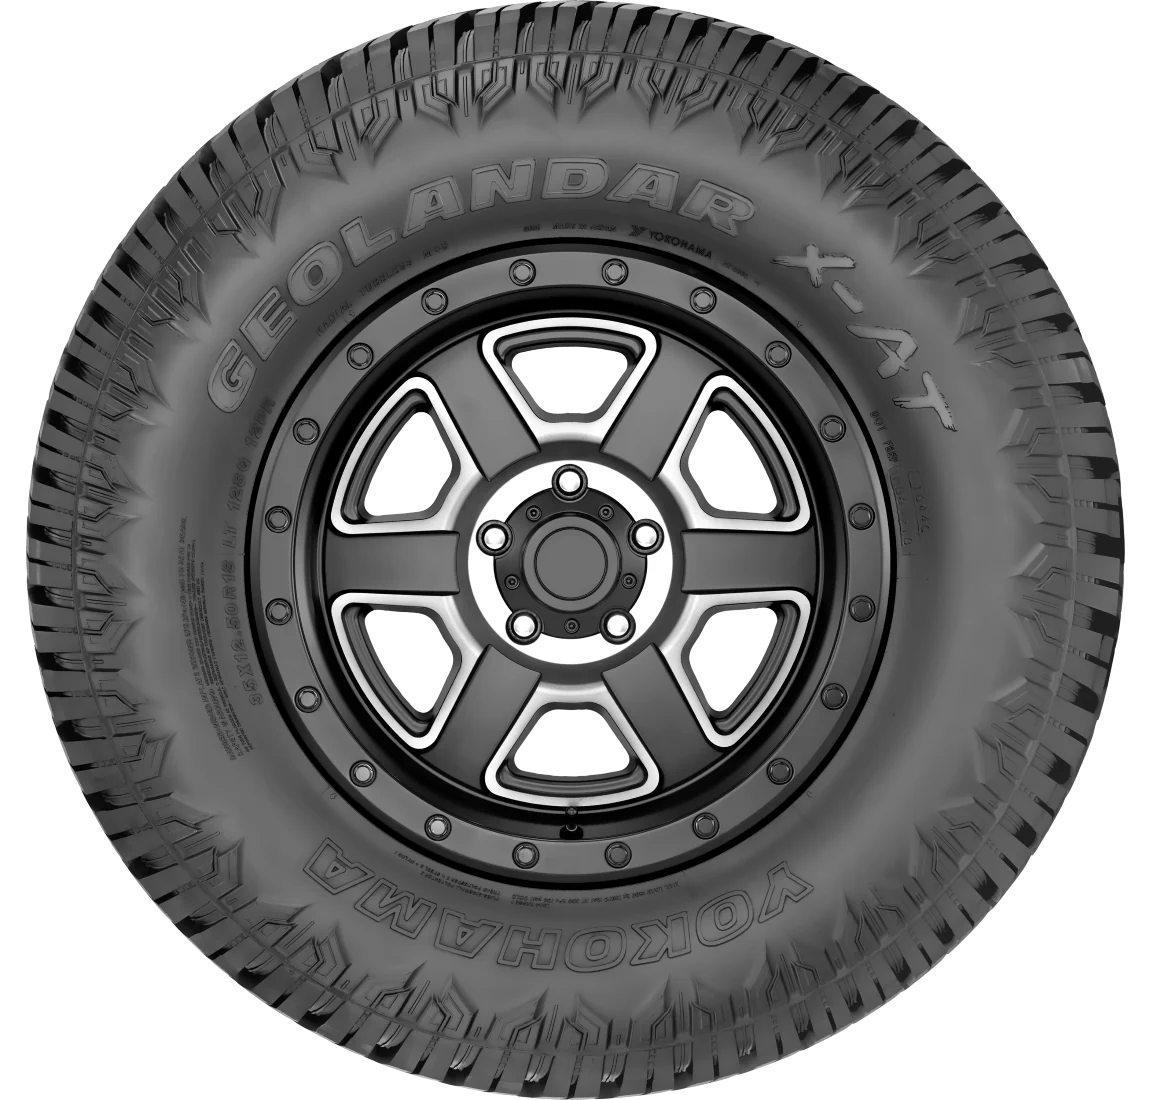 295/70R18 Yokohama Geolander M/T G003 10E | Set of 4 Tires